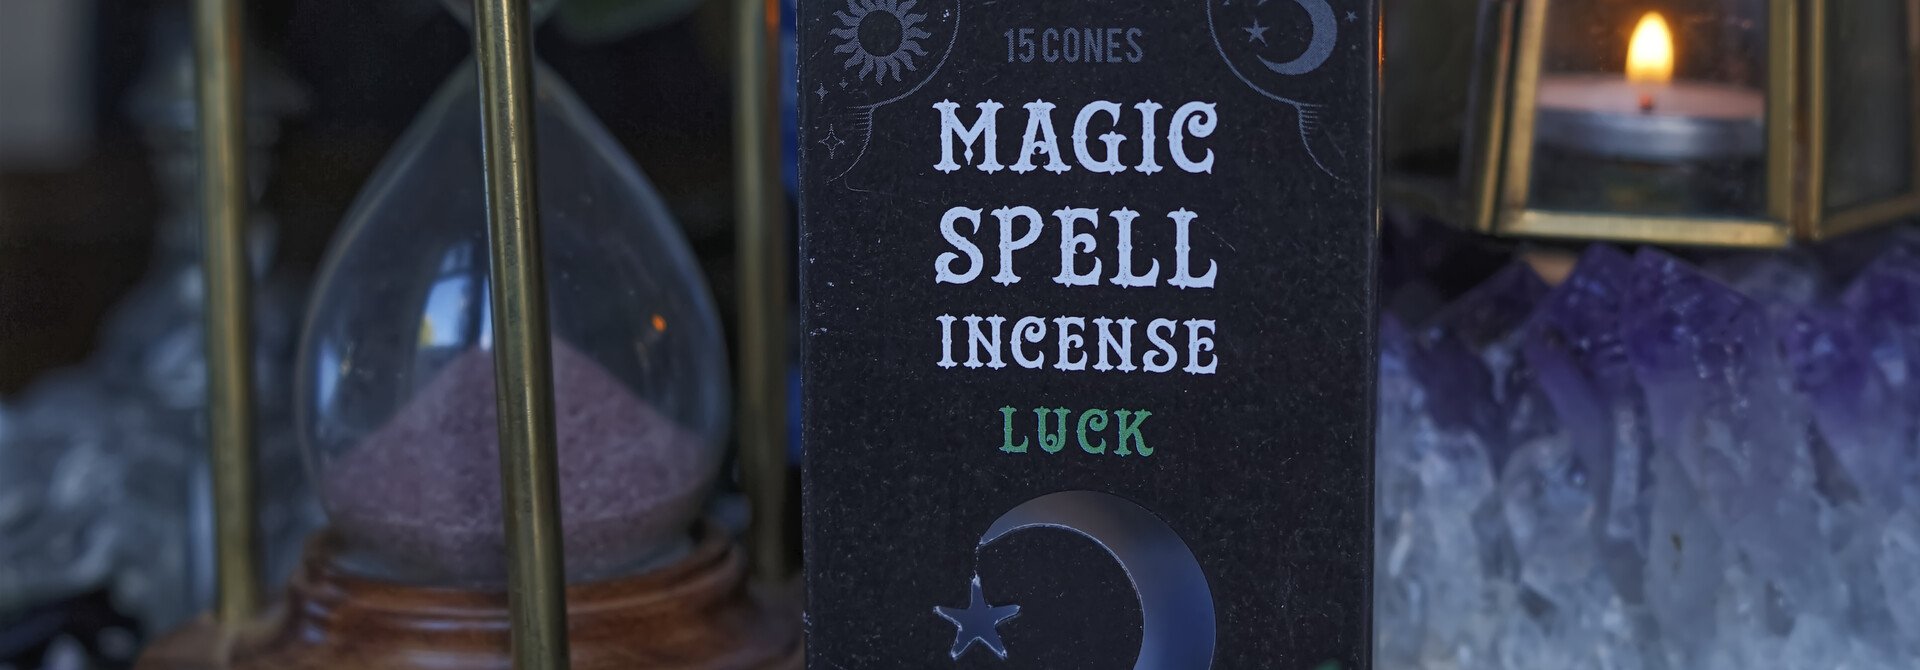 Magic Spell Incense Cones LUCK